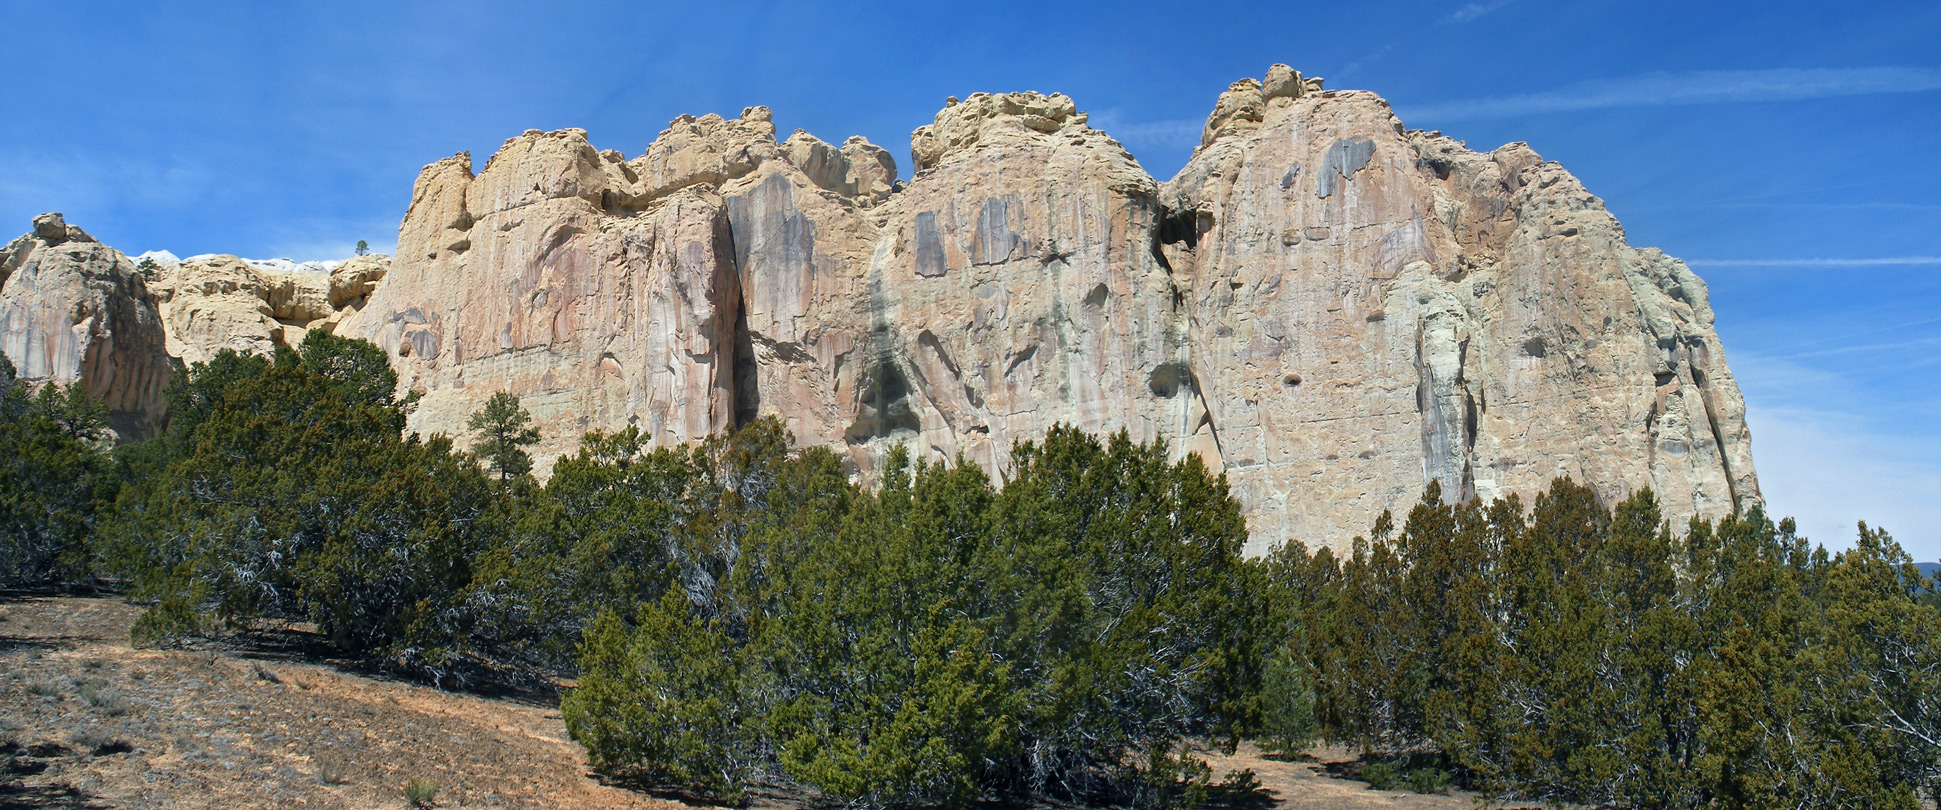 Cliffs of Inscription Rock